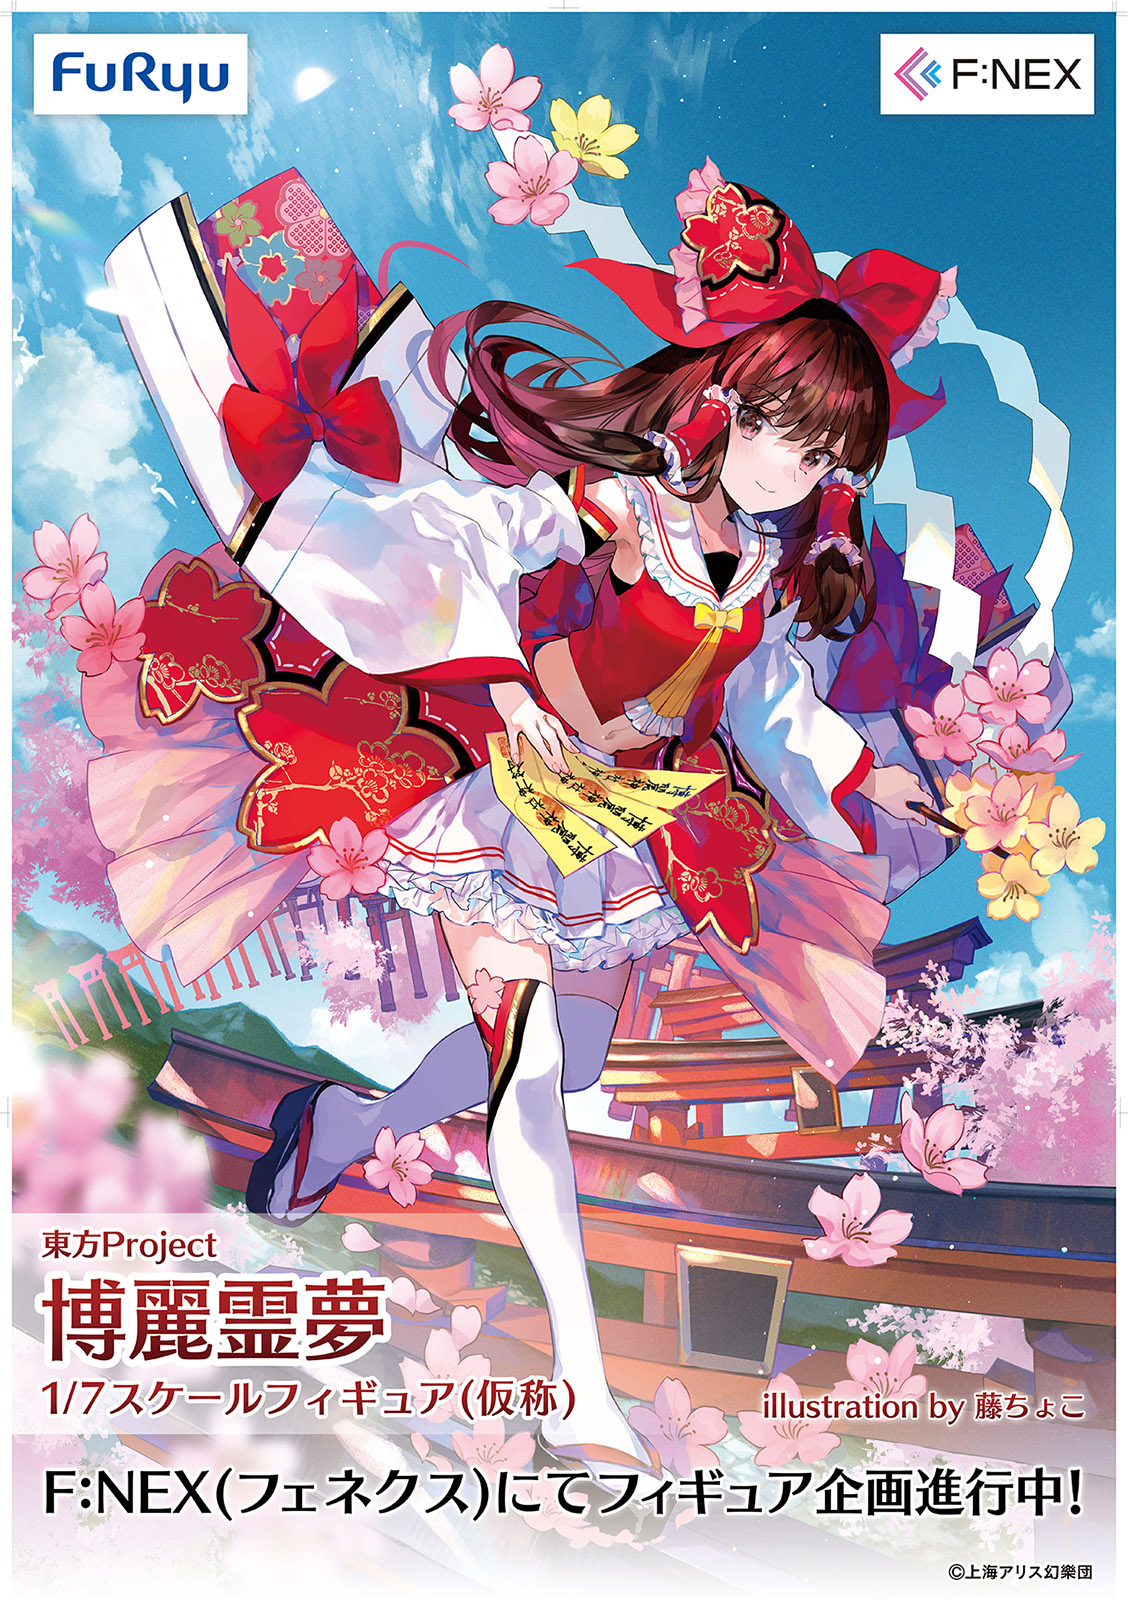 Illustration de Fuzichoco présentant Reimu Hakurei, la jeune fille du sanctuaire Hakurei dans le jeu 